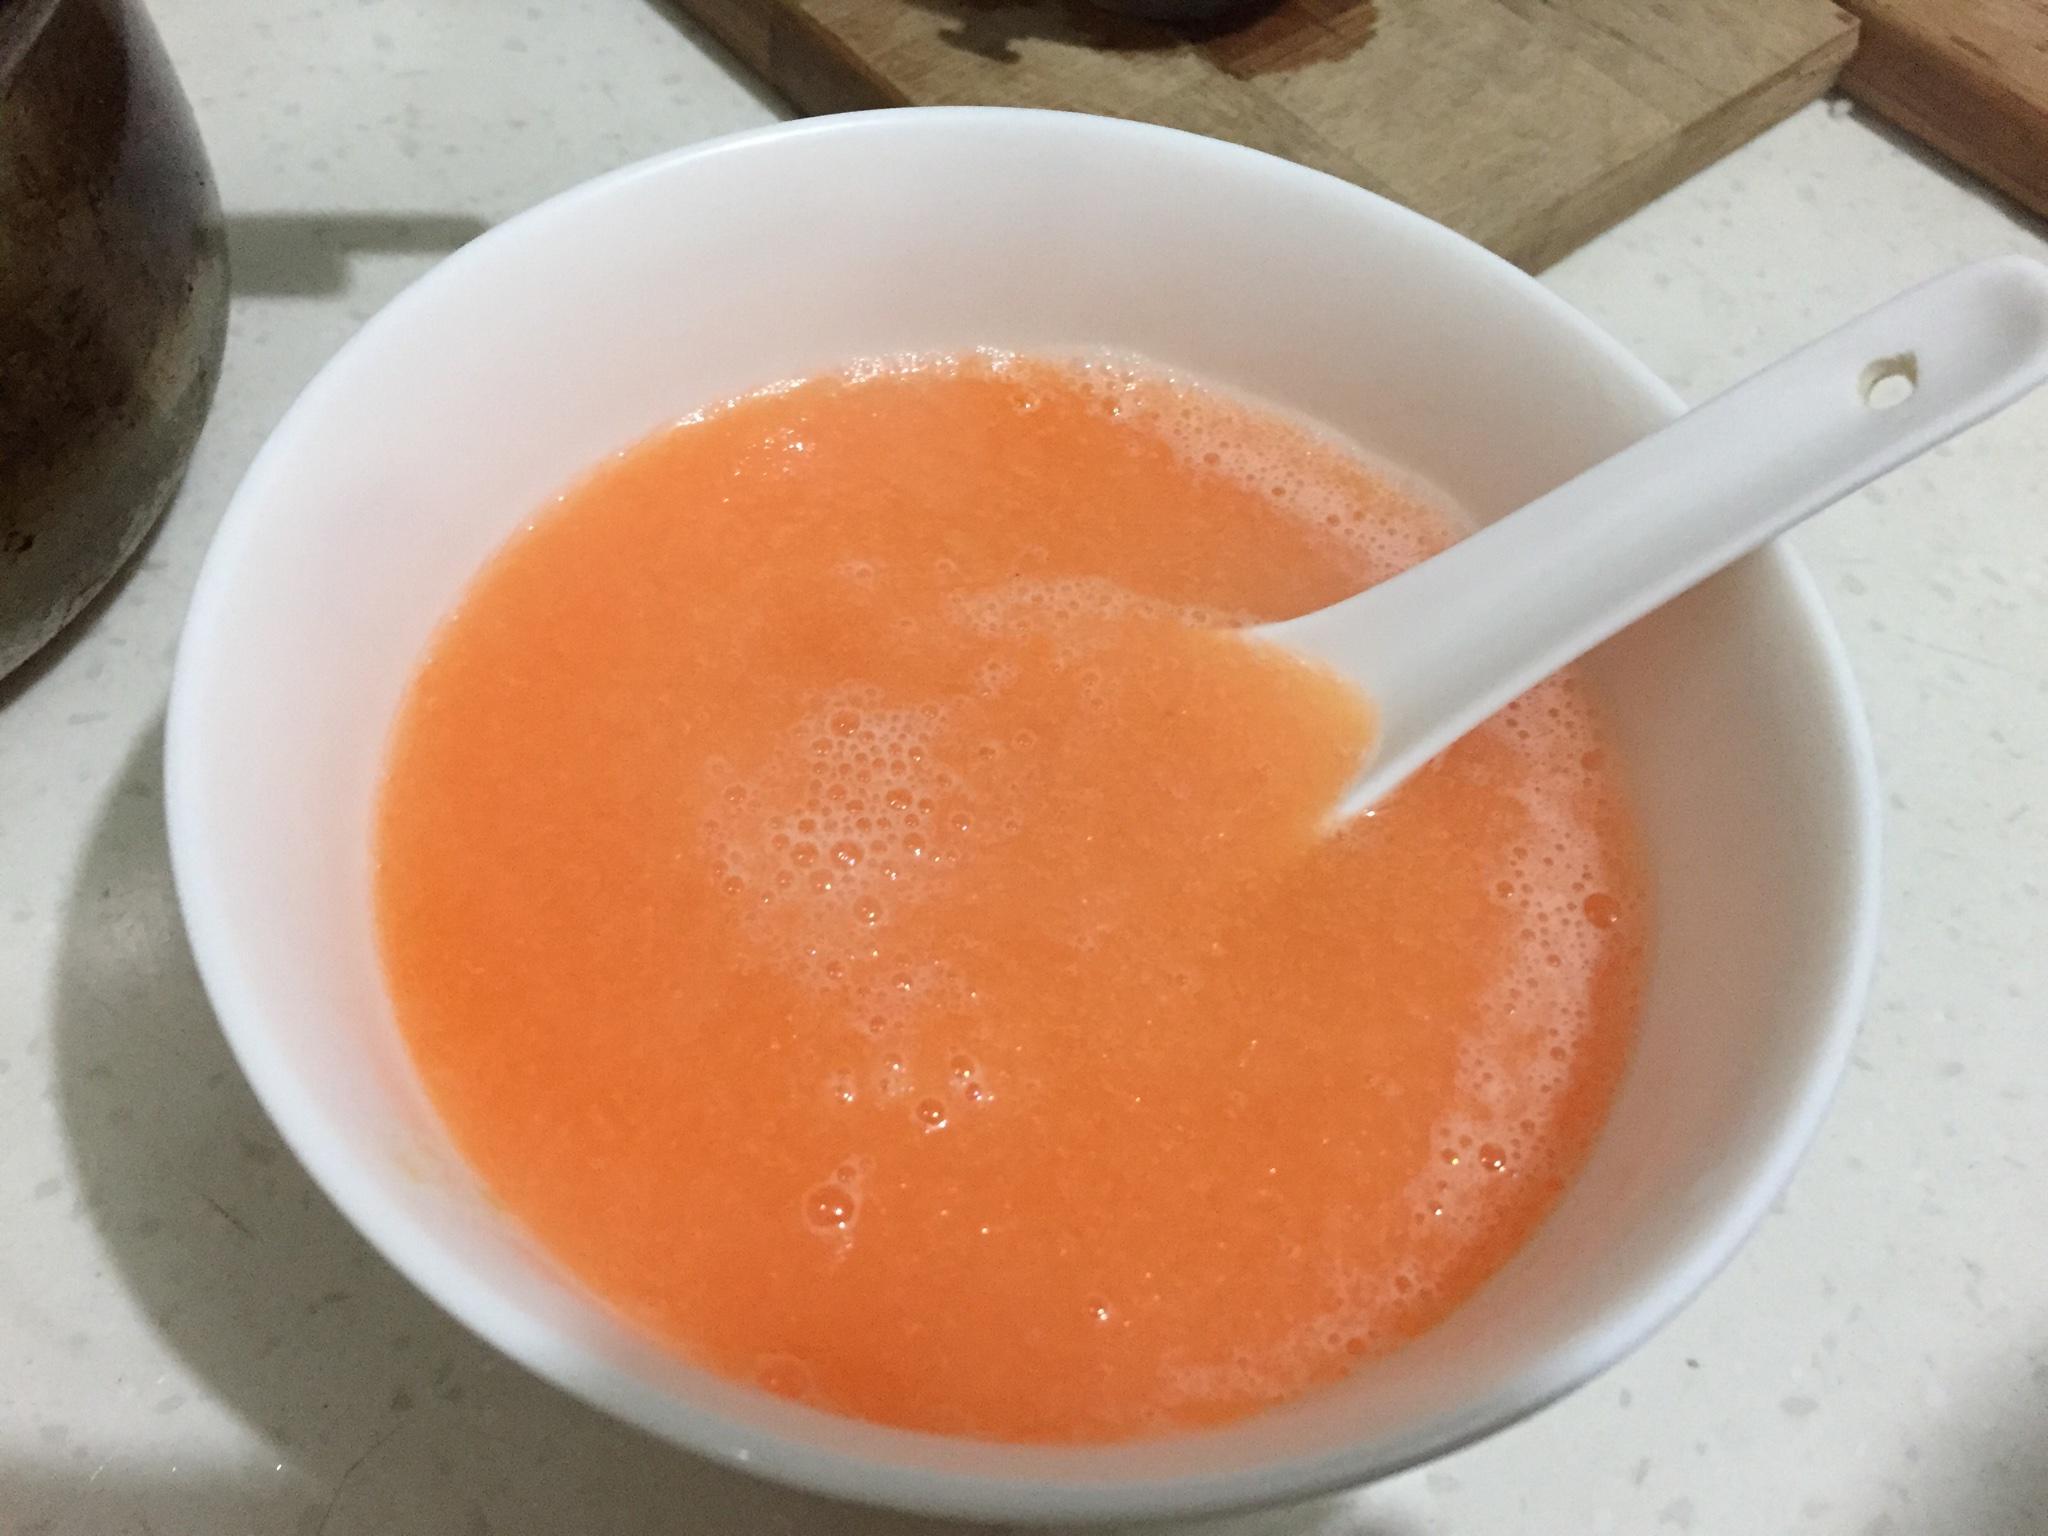 胡萝卜苹果橙汁